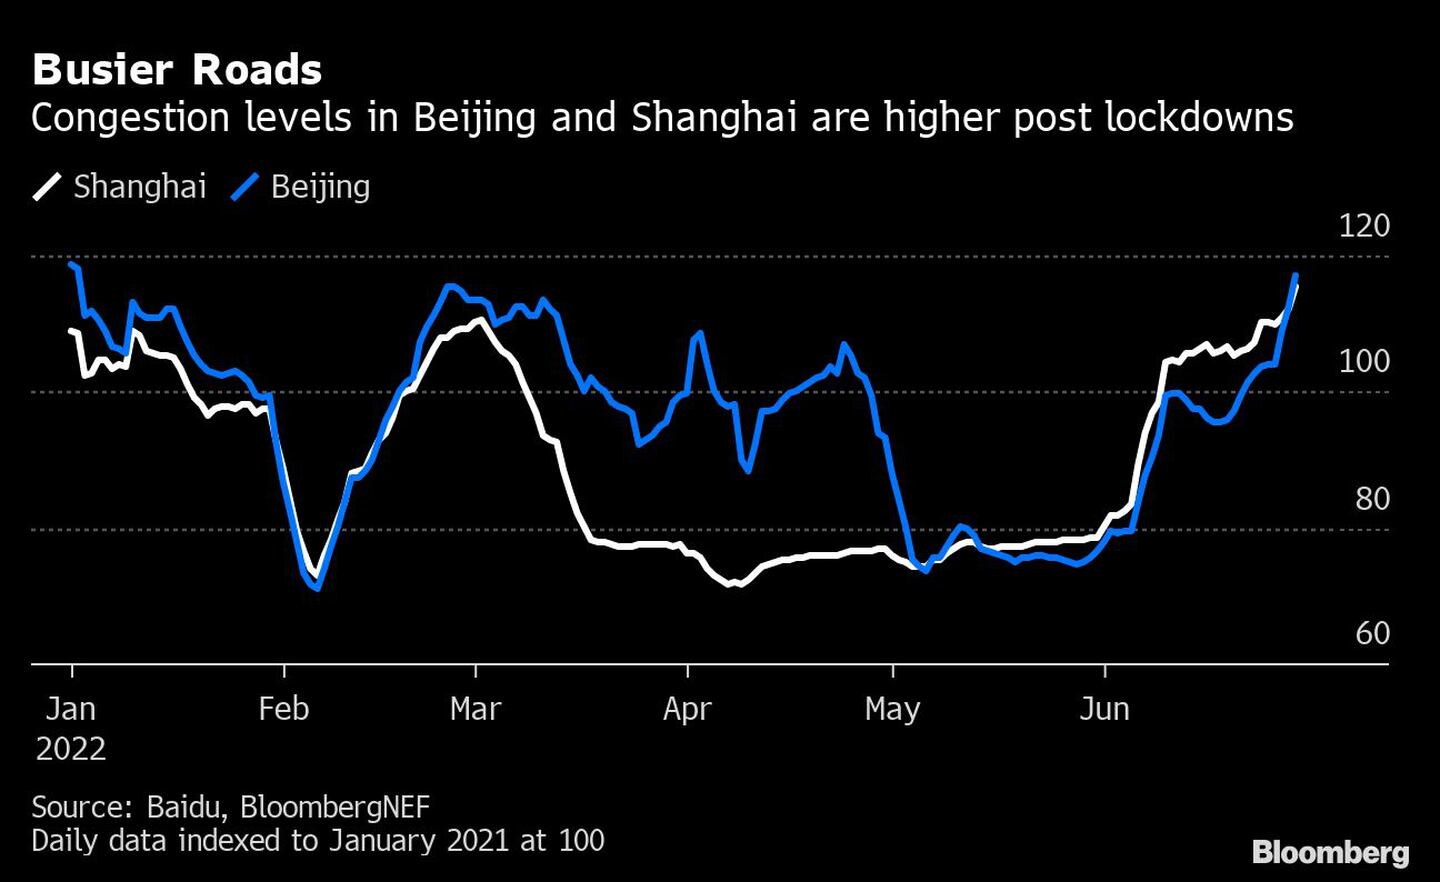 Los niveles de congestión en Pekín y Shanghai son mayores tras los cierres
dfd